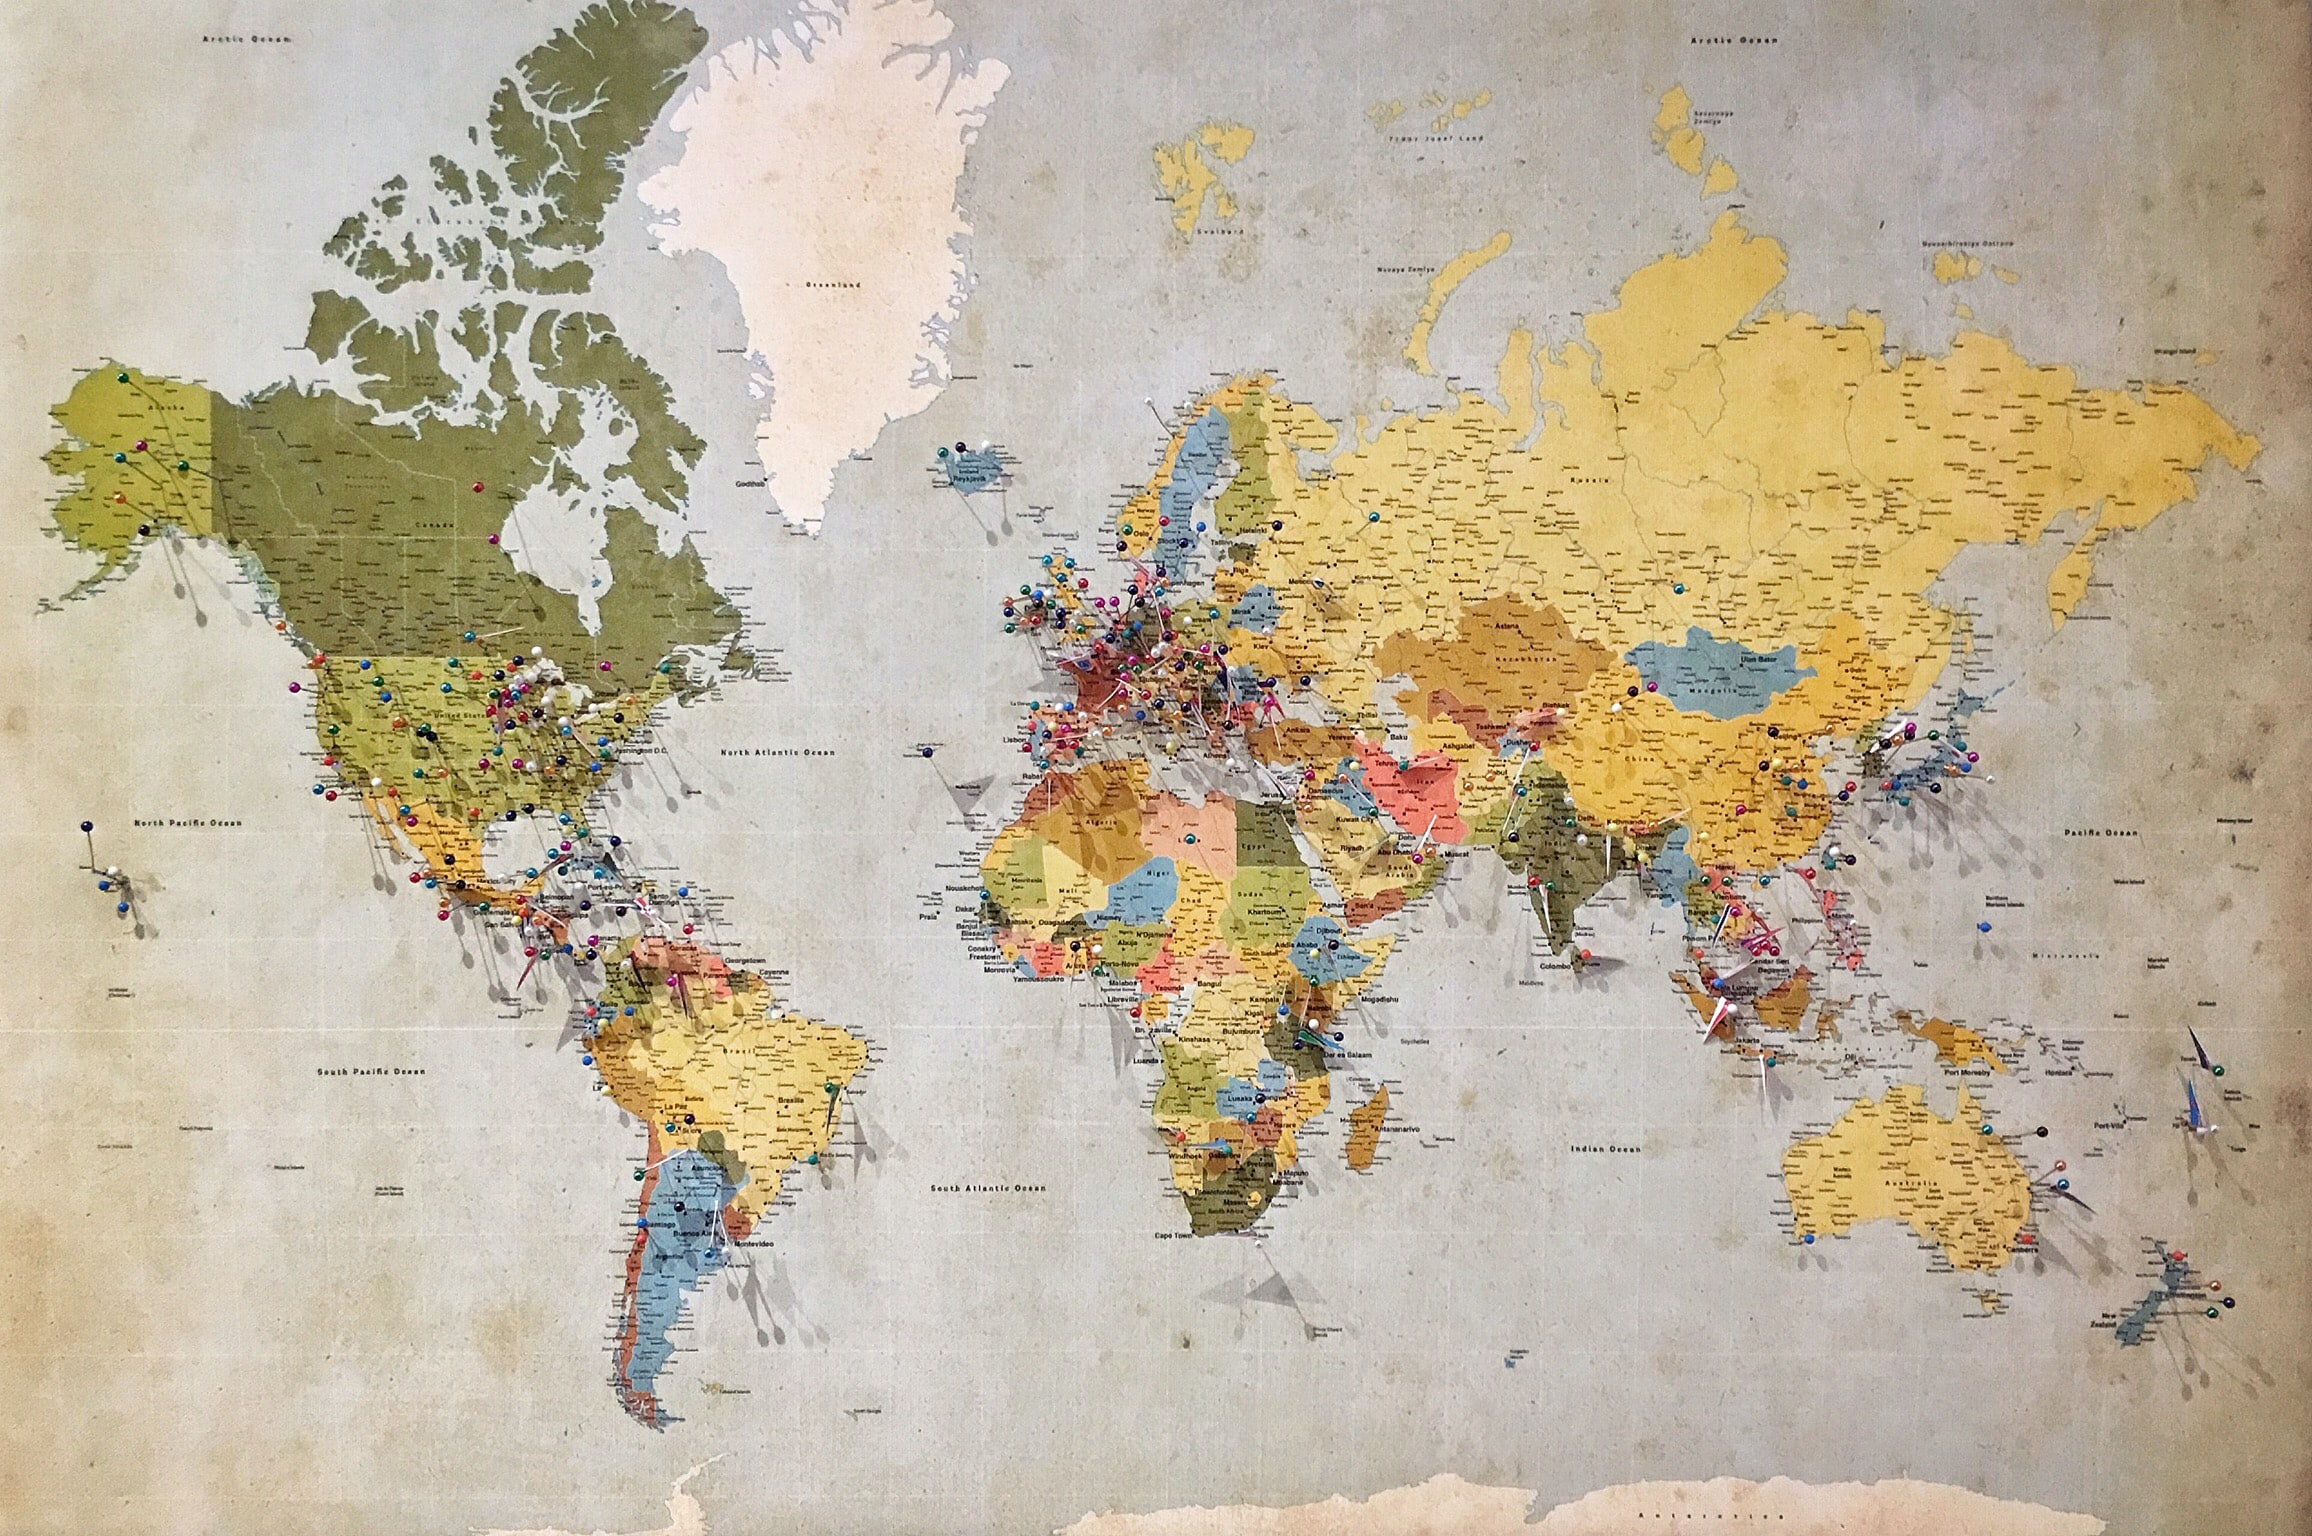 Eine bunte Weltkarte mit Pins und Fähnchen zur Markierung verschiedener Orte